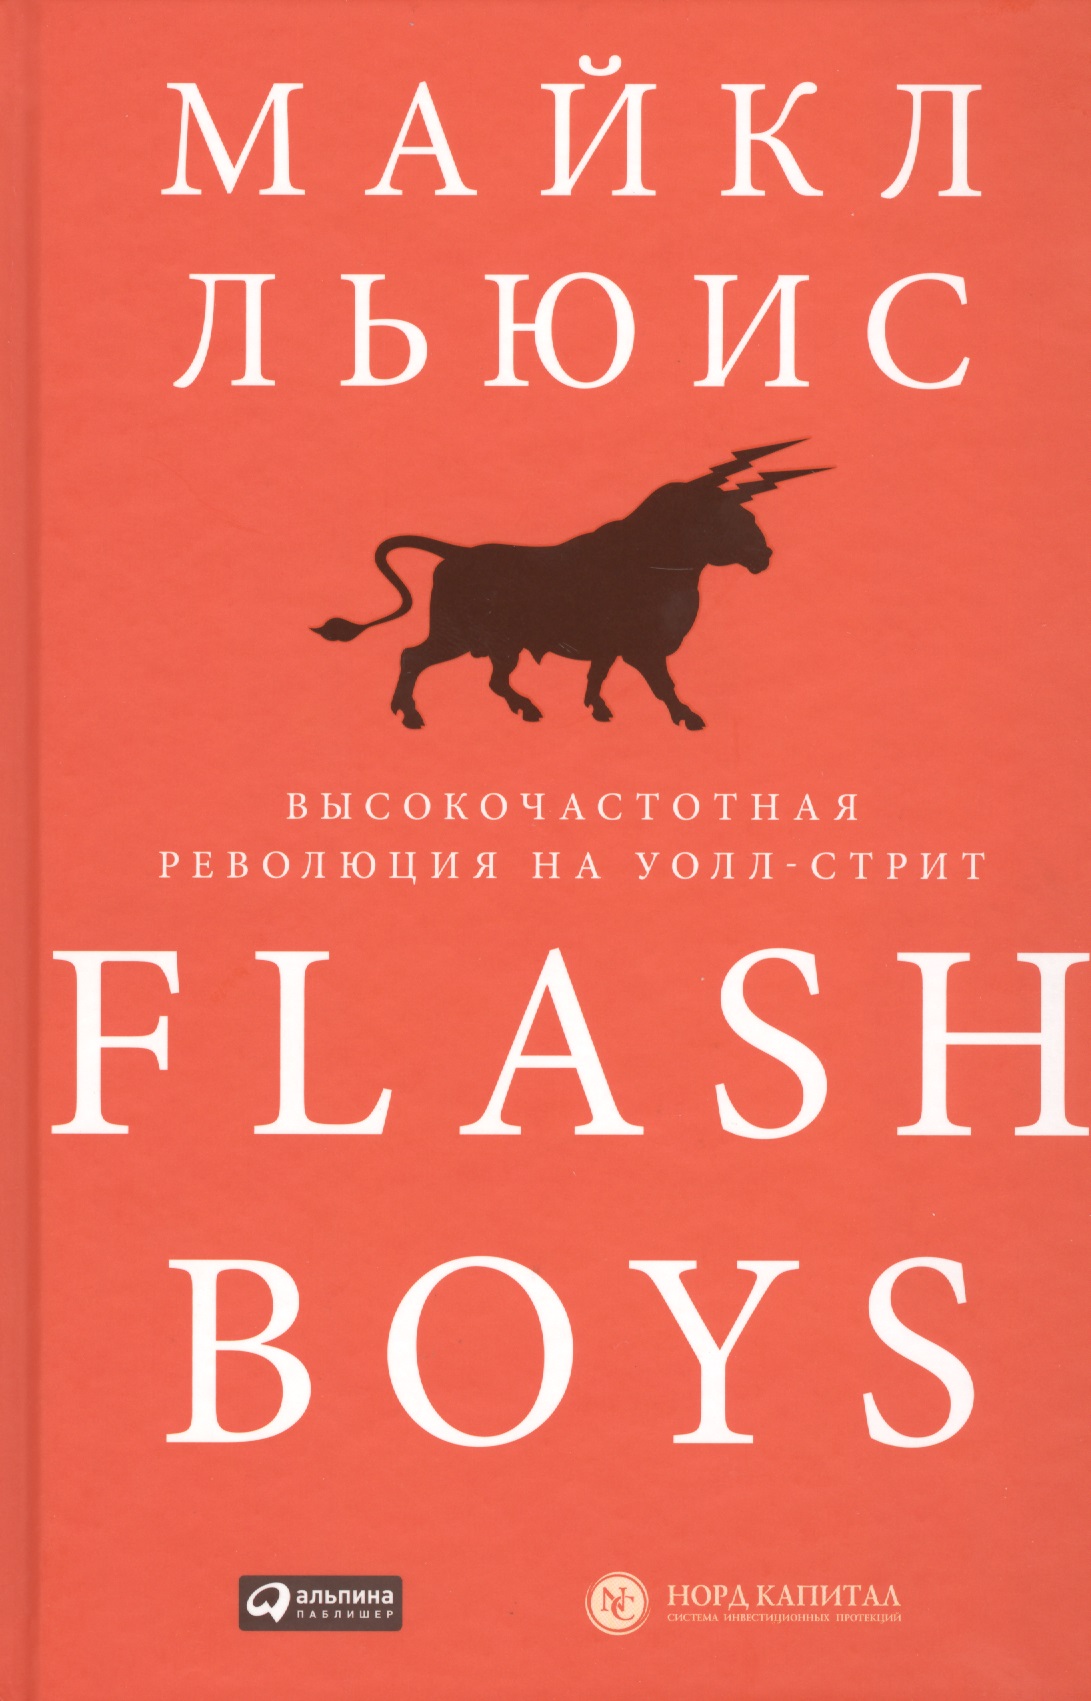 Льюис Майкл Flash Boys: Высокочастотная революция на Уолл-стрит льюис м flash boys высокочастотная революция на уолл стрит